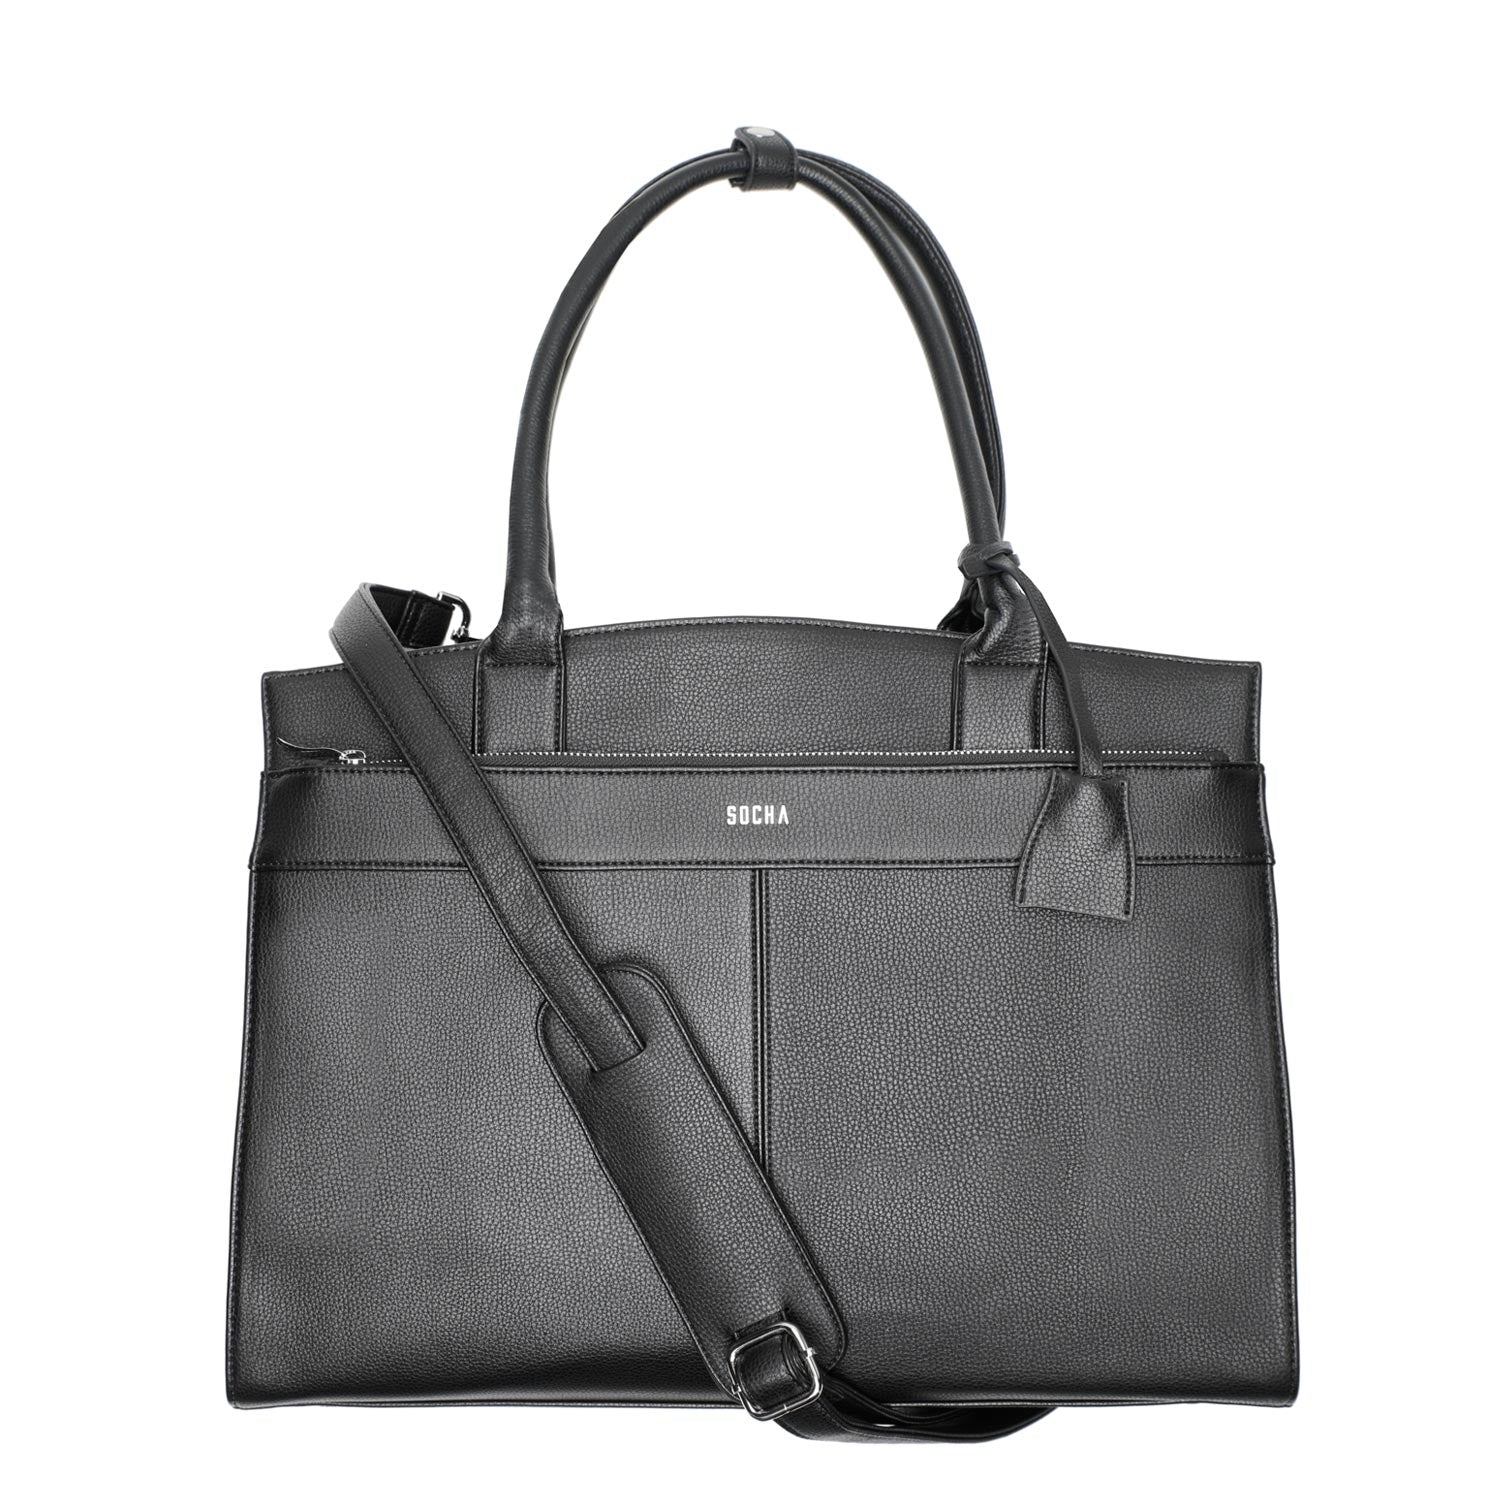 Socha iconic zwart 15.6 inch werktas voor dames voorkant tas met schouderband